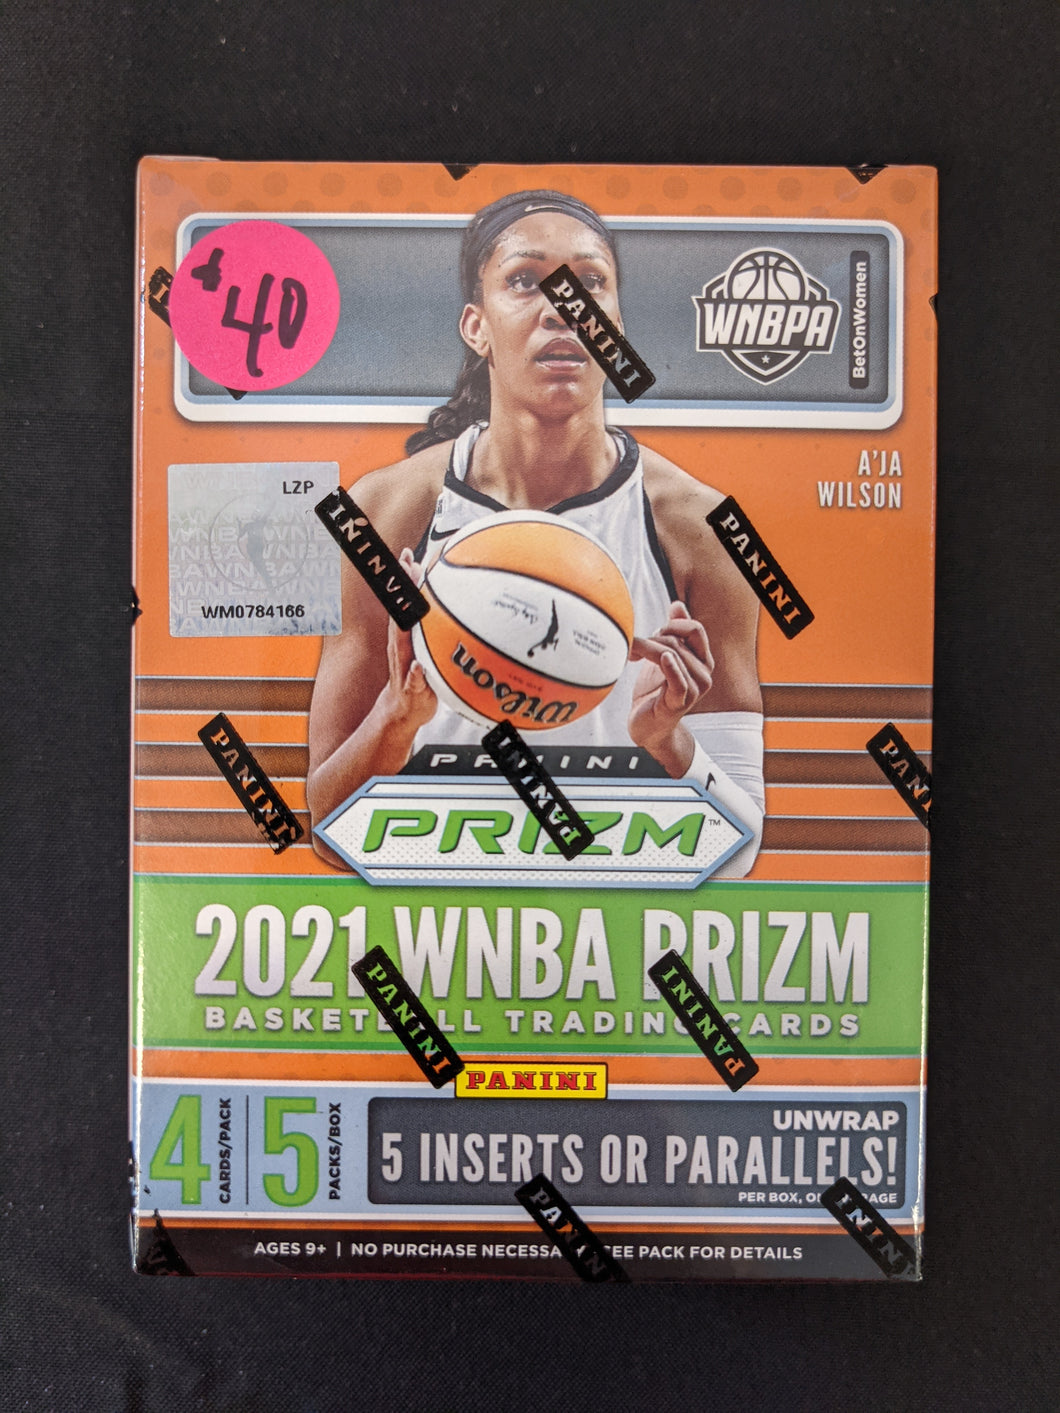 2021 WNBA Prizm Blaster